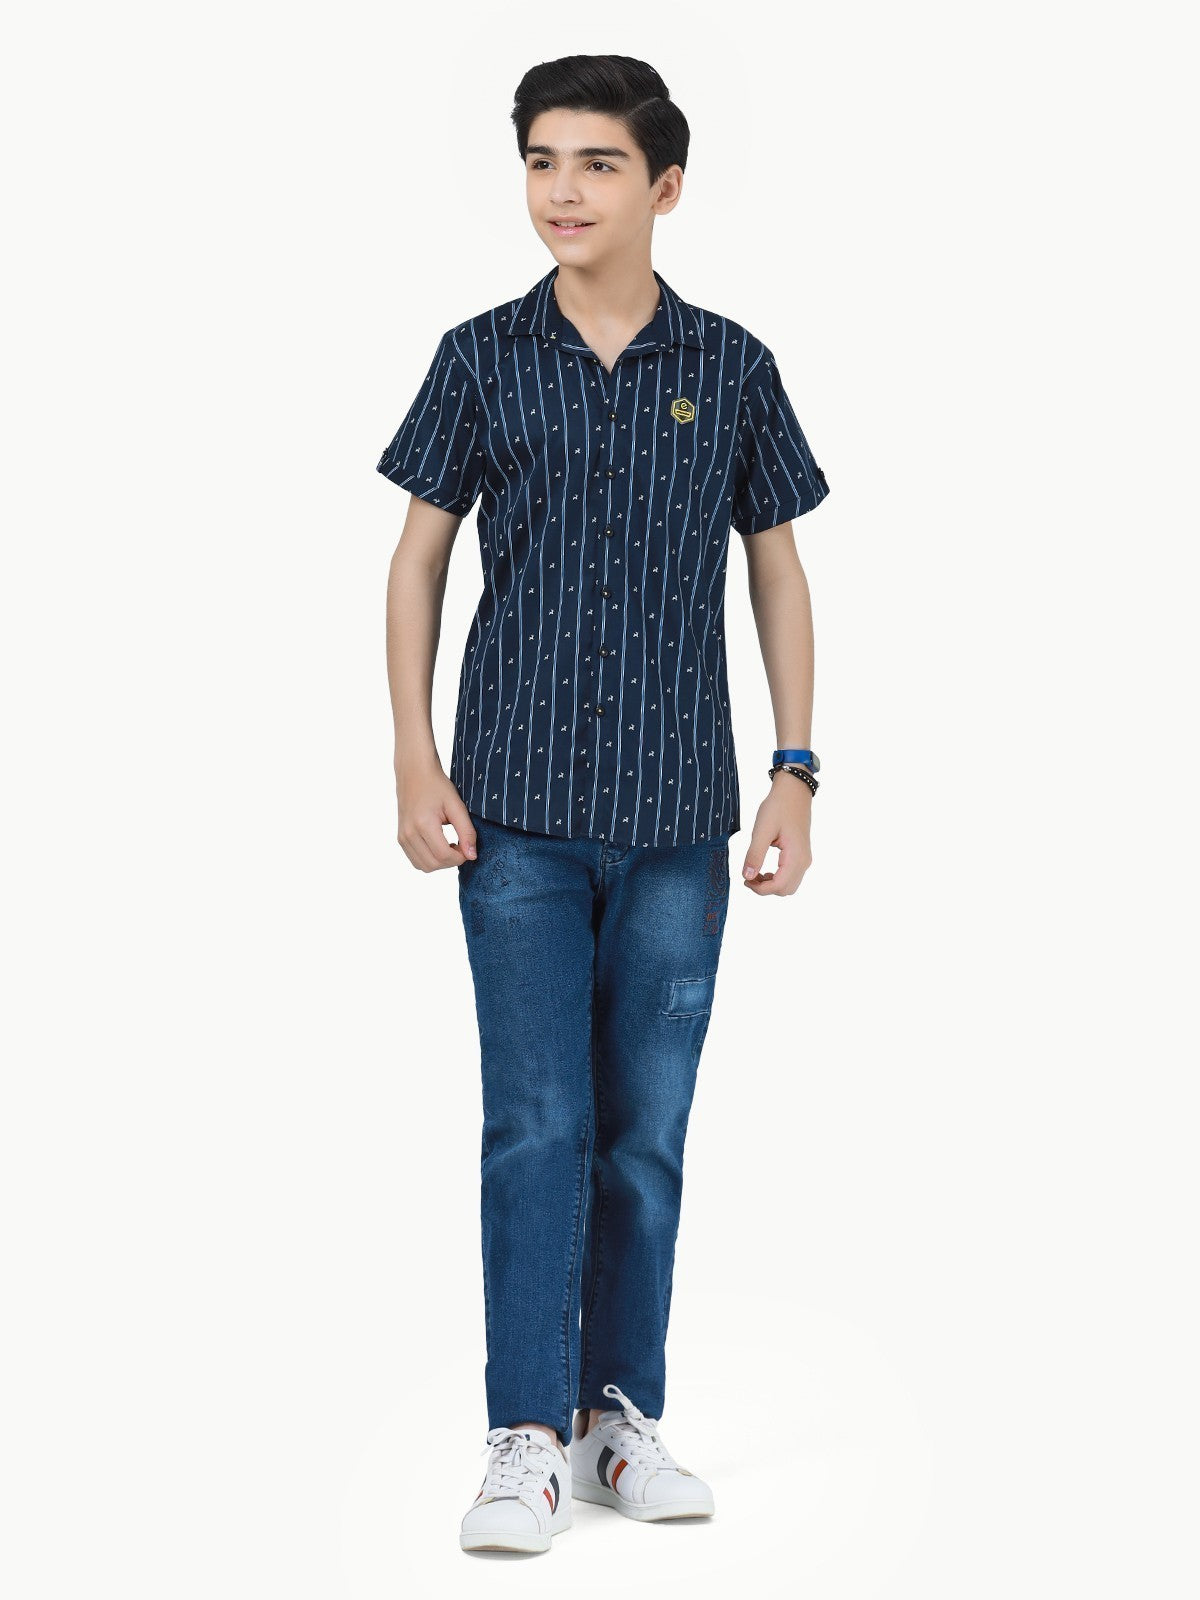 Boy's Navy Blue Shirt - EBTS23-27413